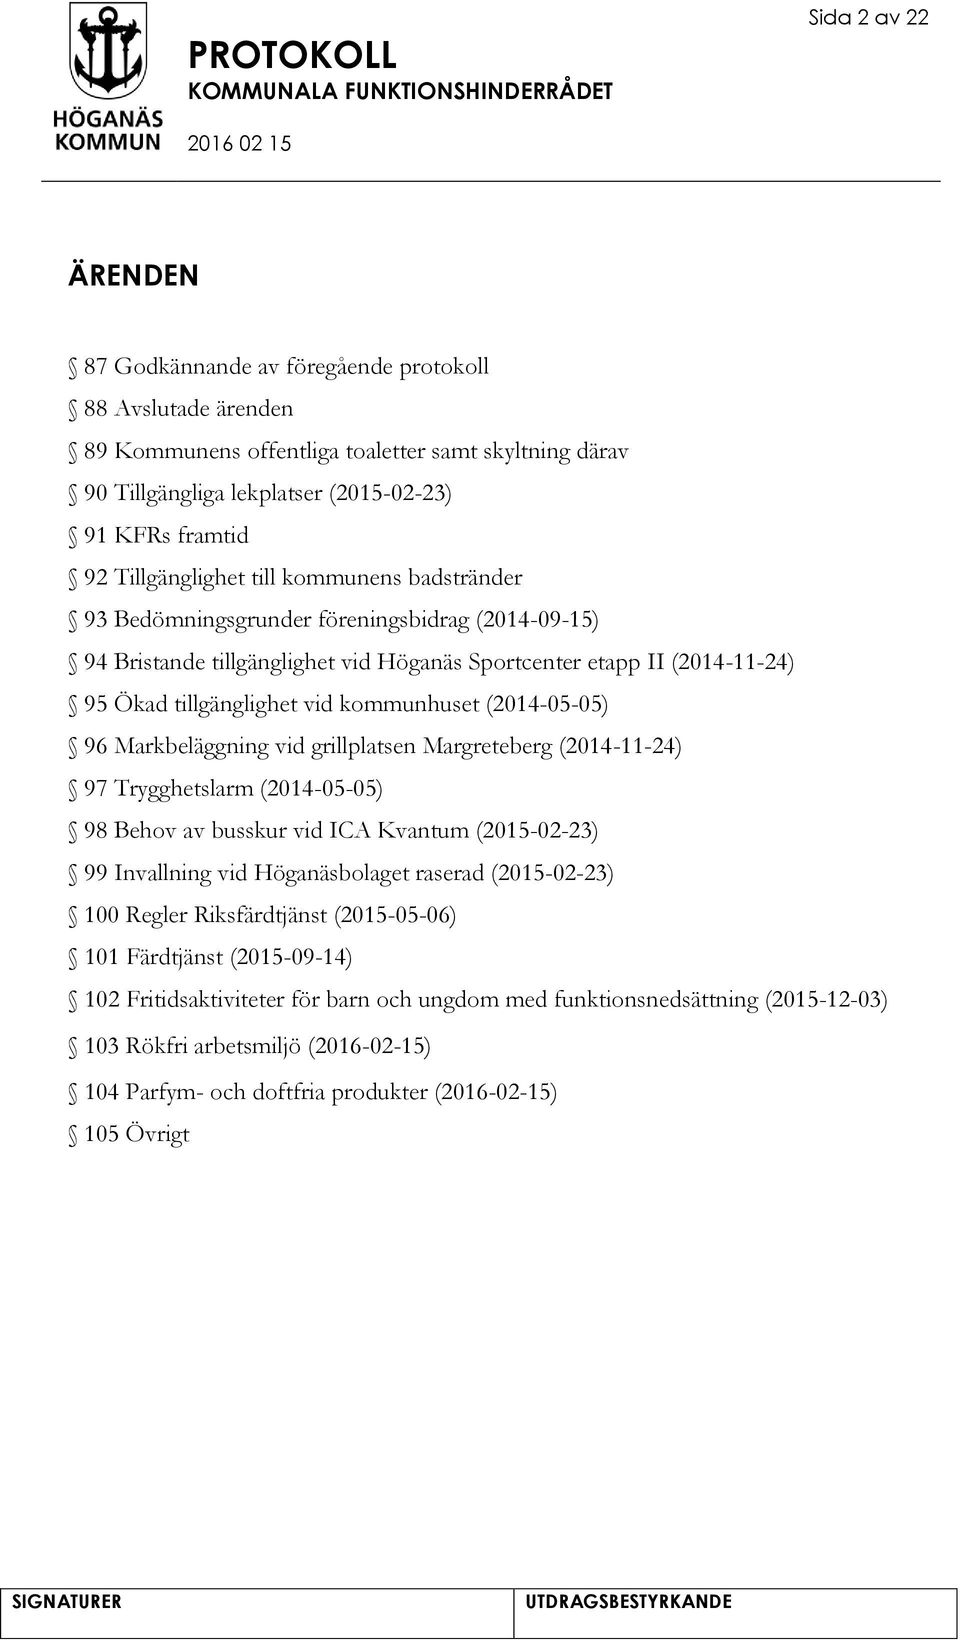 kommunhuset (2014-05-05) 96 Markbeläggning vid grillplatsen Margreteberg (2014-11-24) 97 Trygghetslarm (2014-05-05) 98 Behov av busskur vid ICA Kvantum (2015-02-23) 99 Invallning vid Höganäsbolaget